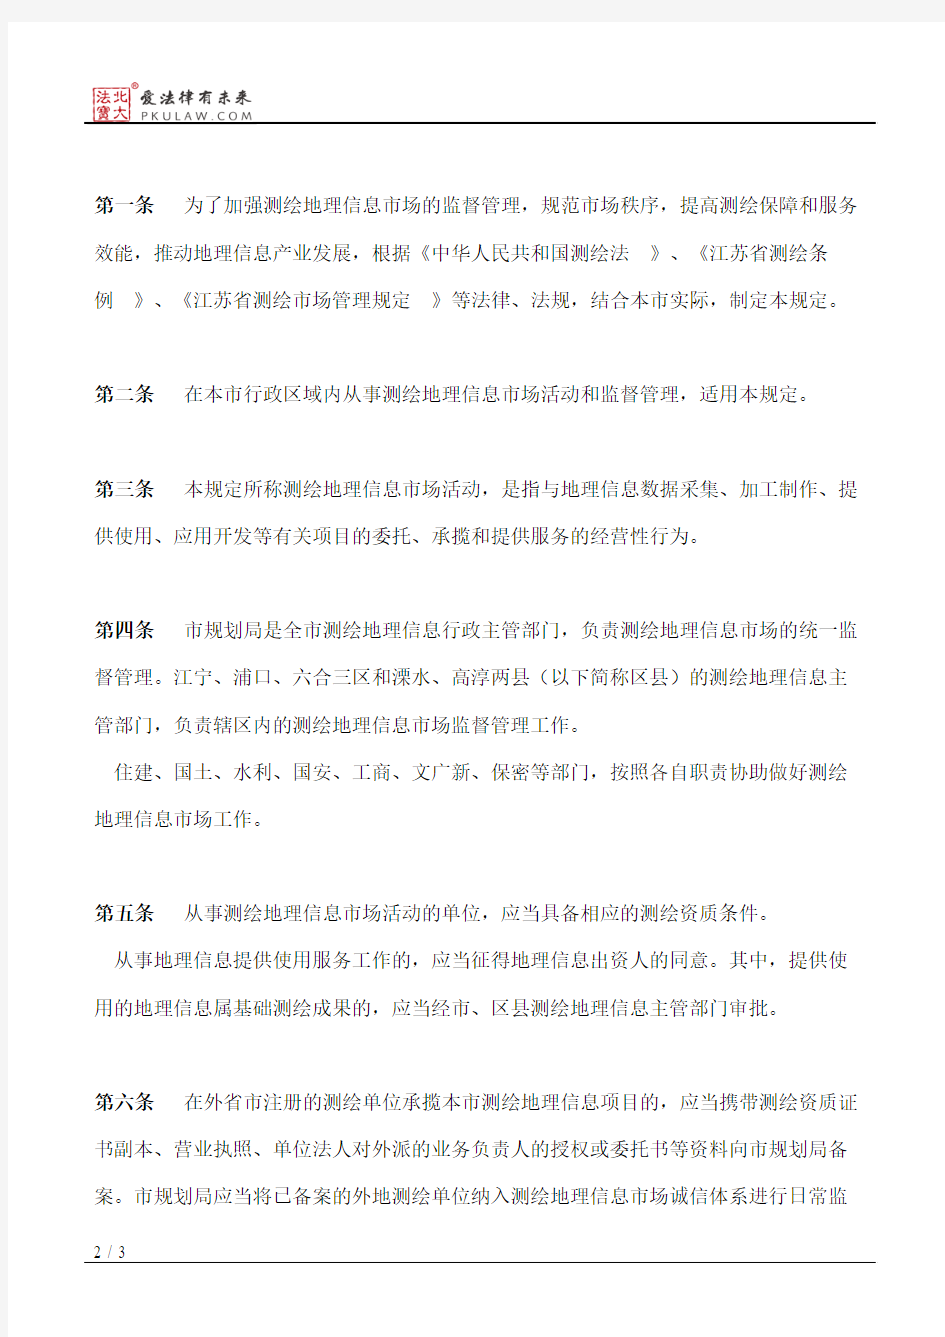 南京市人民政府关于印发南京市测绘地理信息市场管理规定的通知